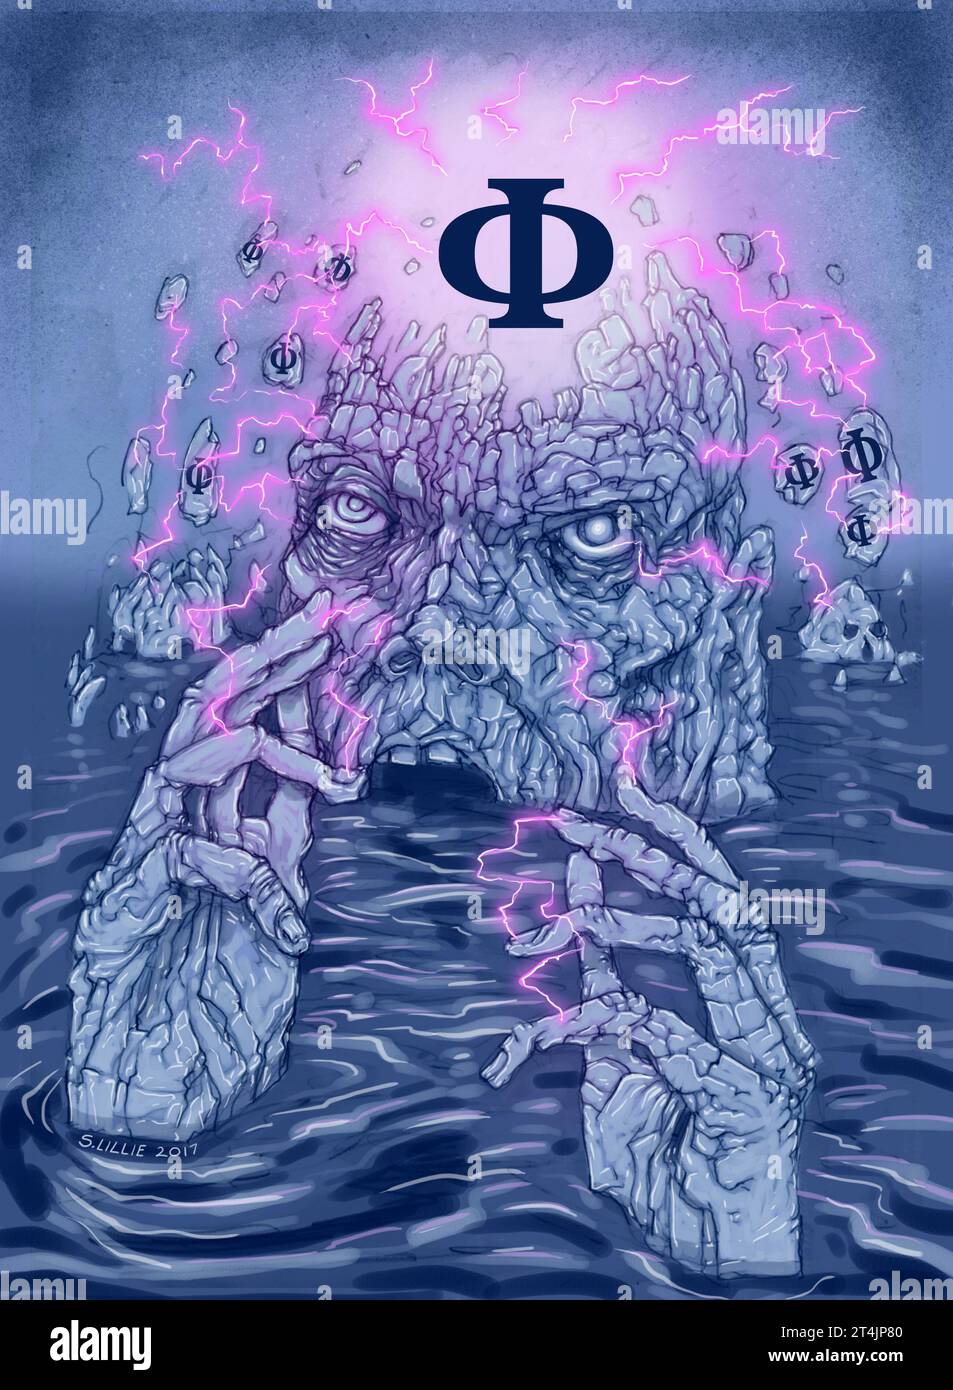 Art conceptuel illustrant la théorie de l'information intégrée de la conscience, (IIT) esprit conscient émergeant d'une mer d'information représentée par Φ (phi) Banque D'Images